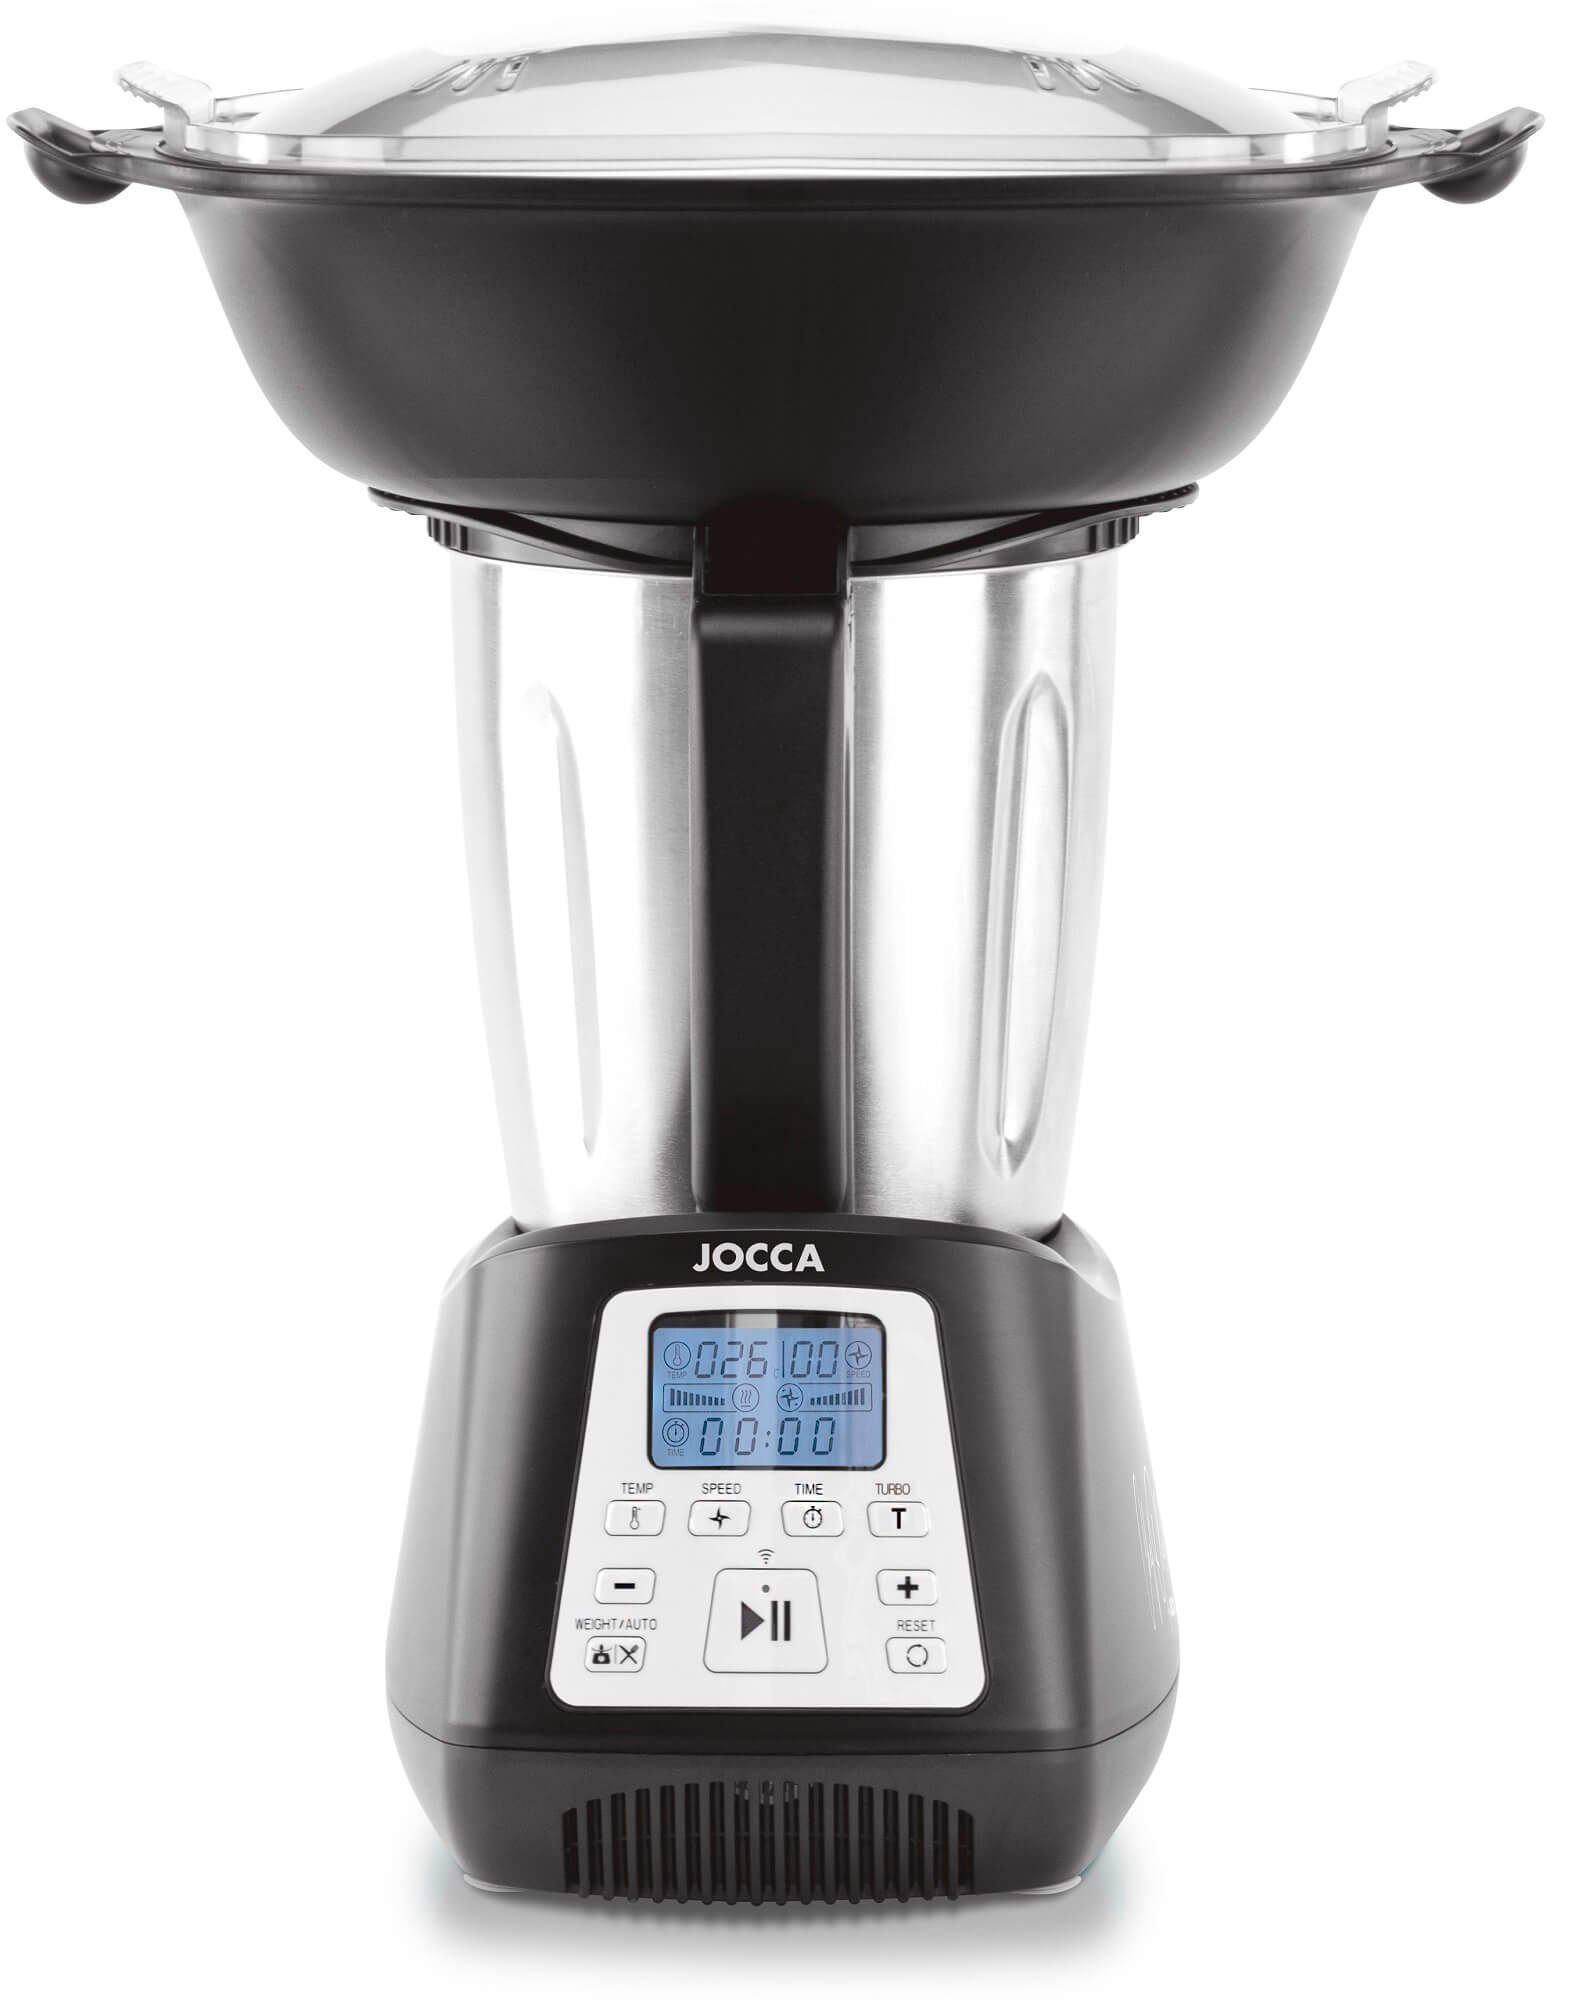 App, Multifunktions-Küchenmaschine W 550 12 mit Jocca Funktionsweisen, All-in-One Küchenmaschine